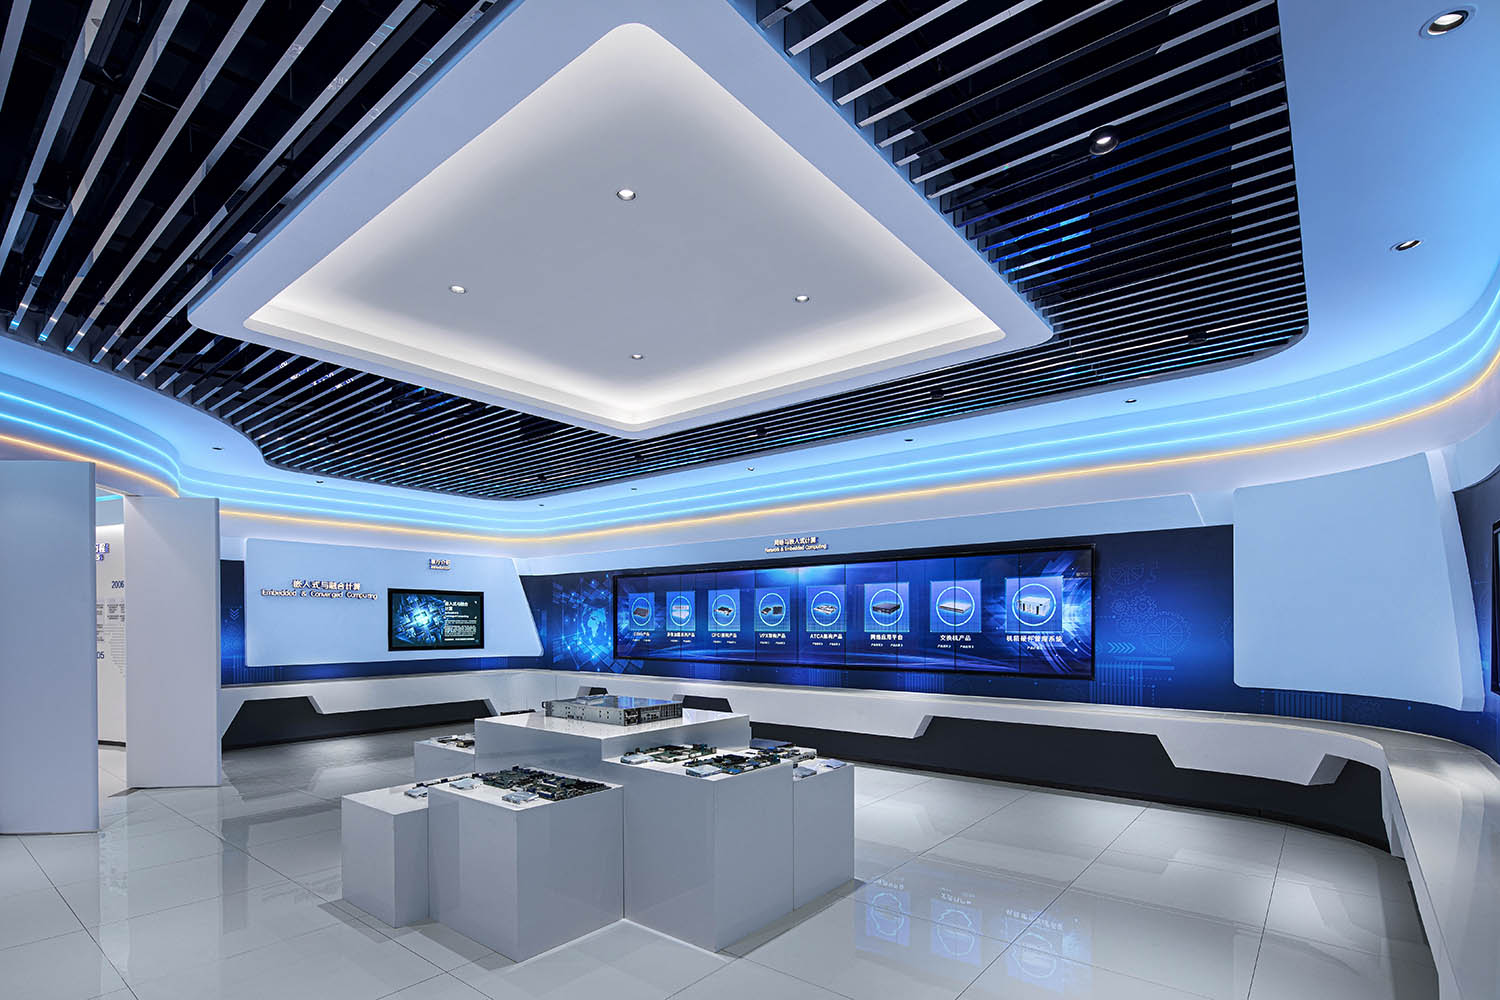 展厅设计,科技展厅设计,上海展厅设计,上海科技展厅设计,恒为科技上海企业展厅,恒为科技,时象设计,时象空间设计,项目投稿